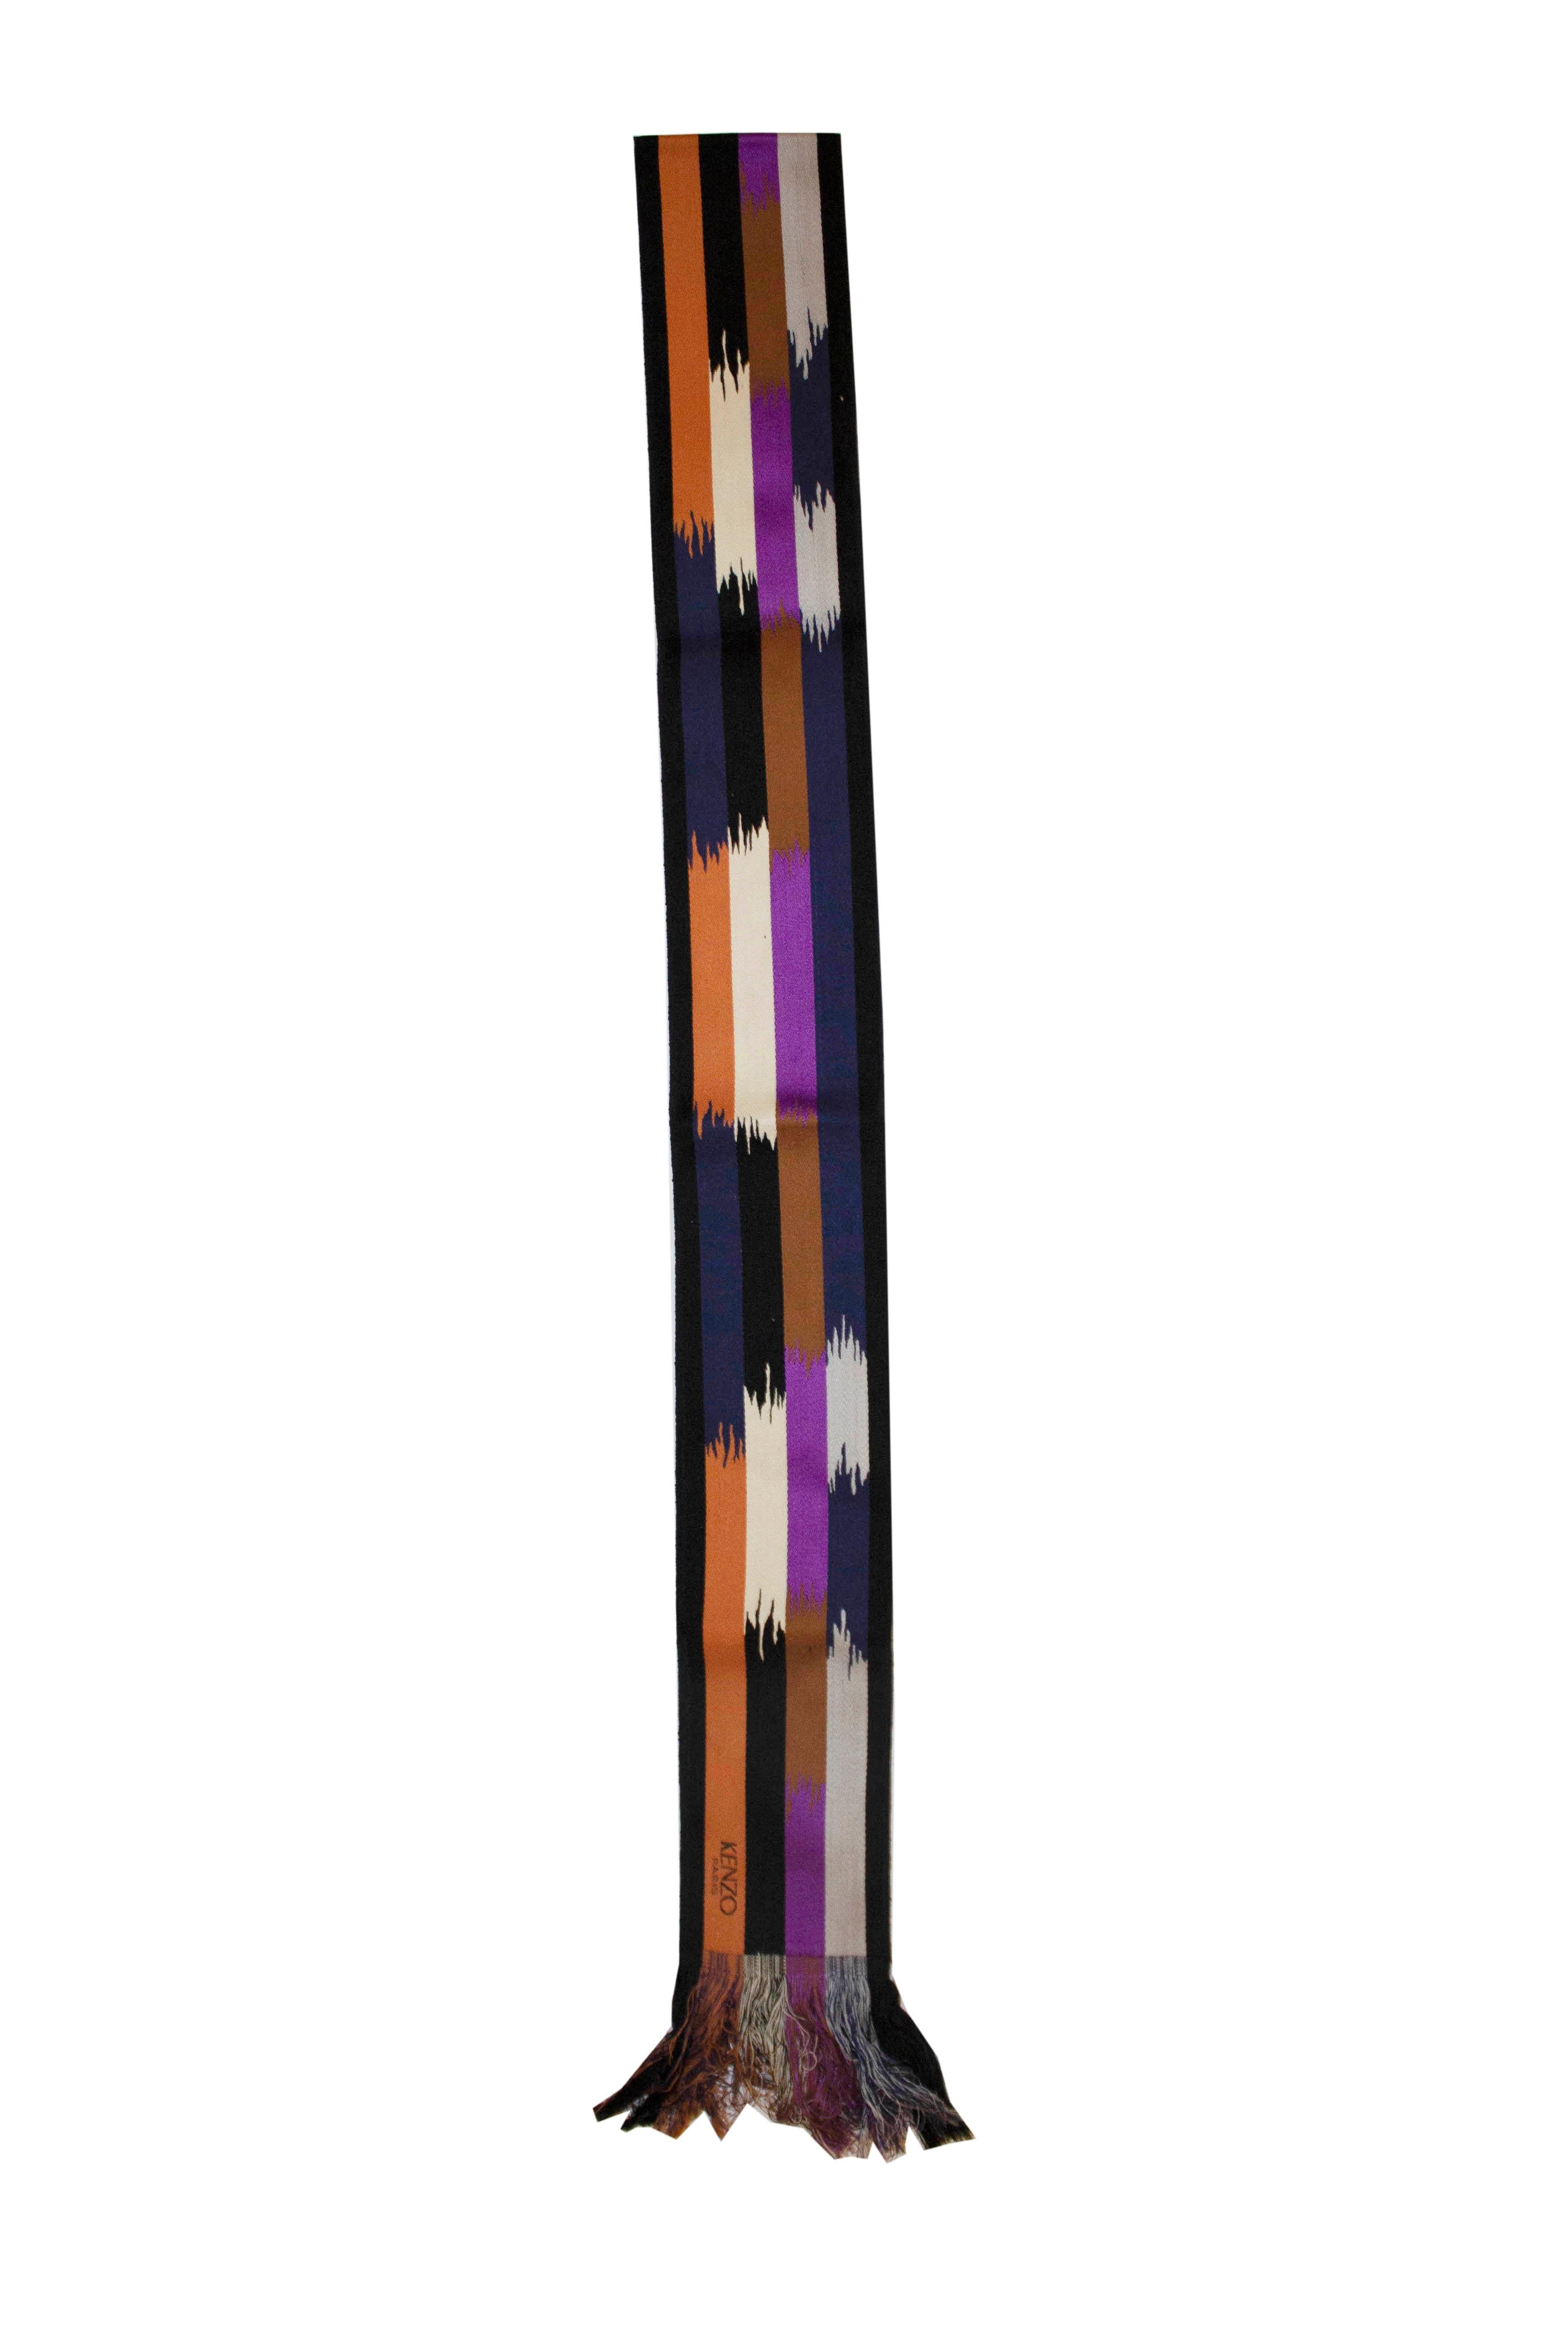 purple obi belt